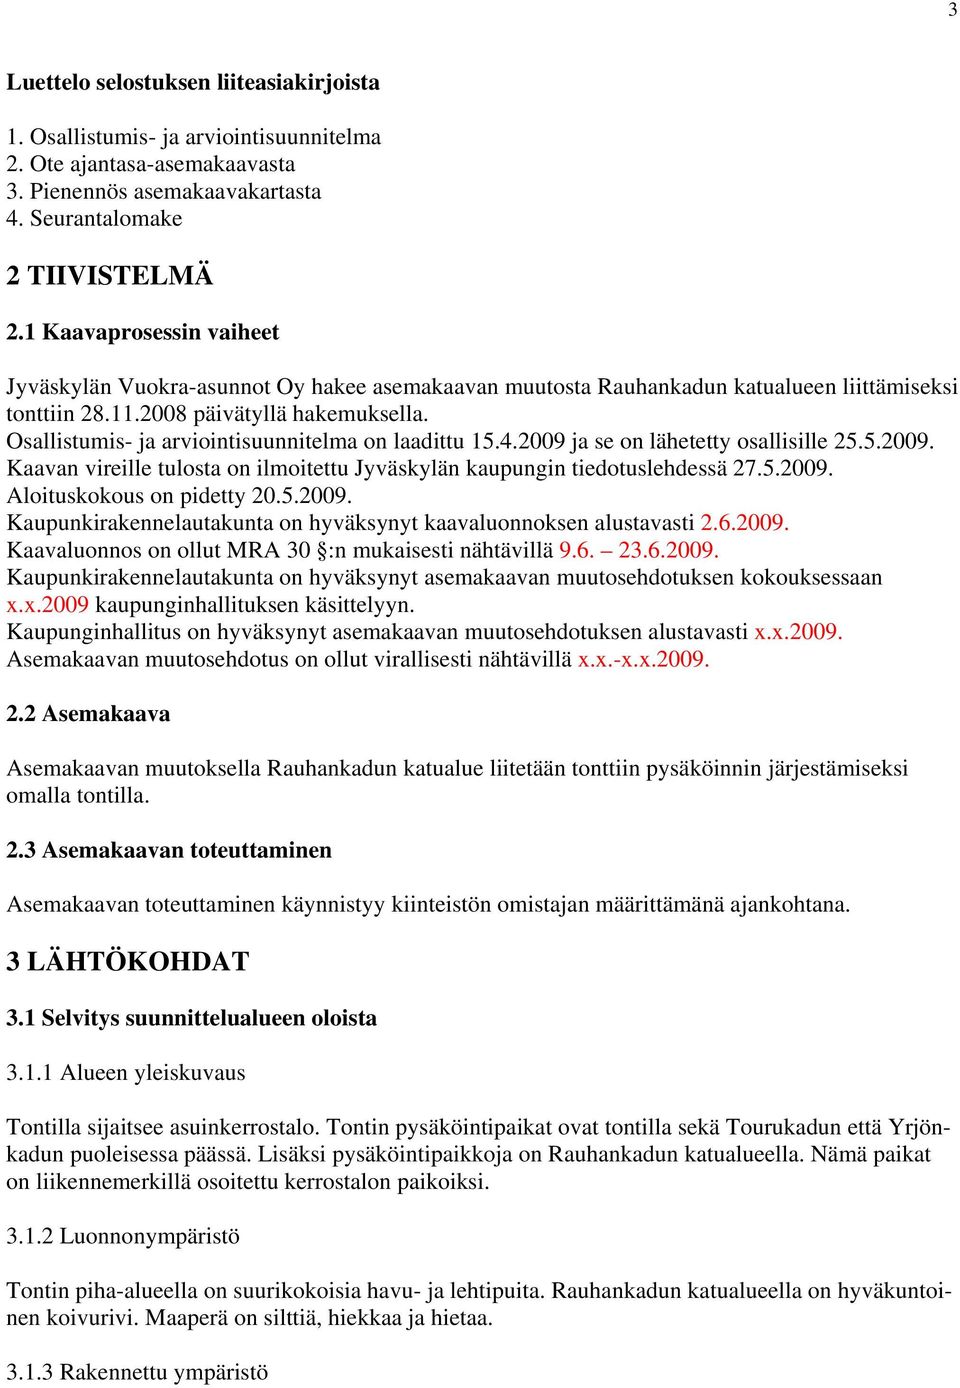 Osallistumis- ja arviointisuunnitelma on laadittu 15.4.2009 ja se on lähetetty osallisille 25.5.2009. Kaavan vireille tulosta on ilmoitettu Jyväskylän kaupungin tiedotuslehdessä 27.5.2009. Aloituskokous on pidetty 20.